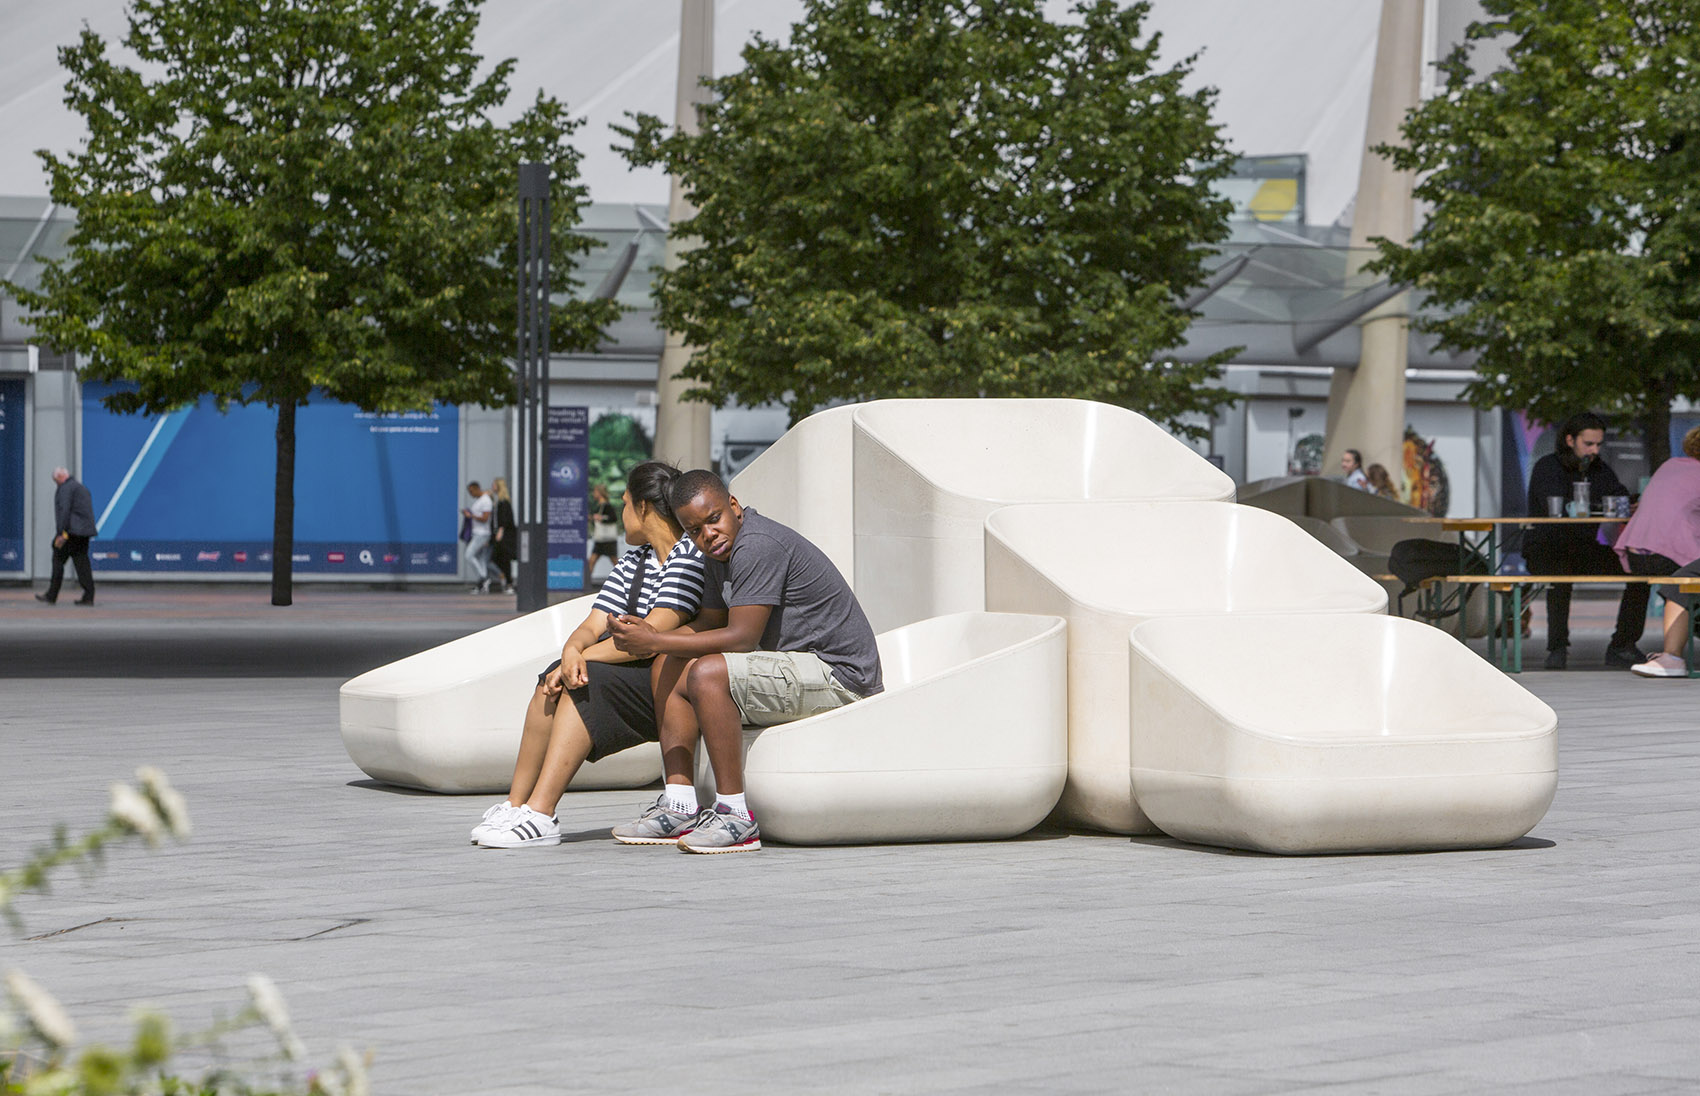 英国混凝土座椅景观装置艺术